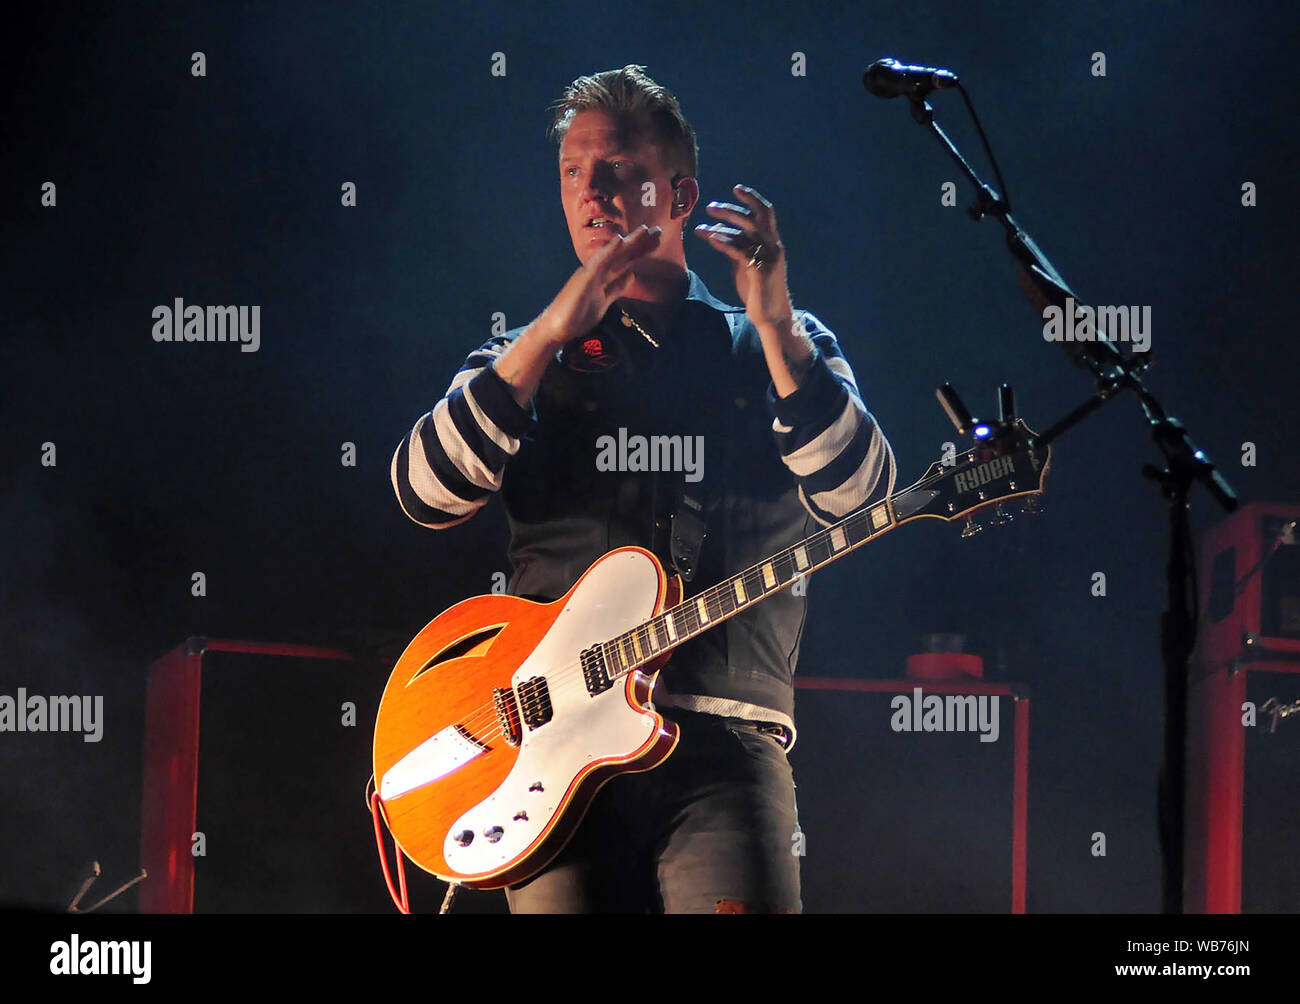 Rio de Janeiro, Brasilien, 25. September 2015. Sänger und Gitarrist Josh Homme von Queens of the Stone Age, während der Show auf der Bühne des Wor Stockfoto